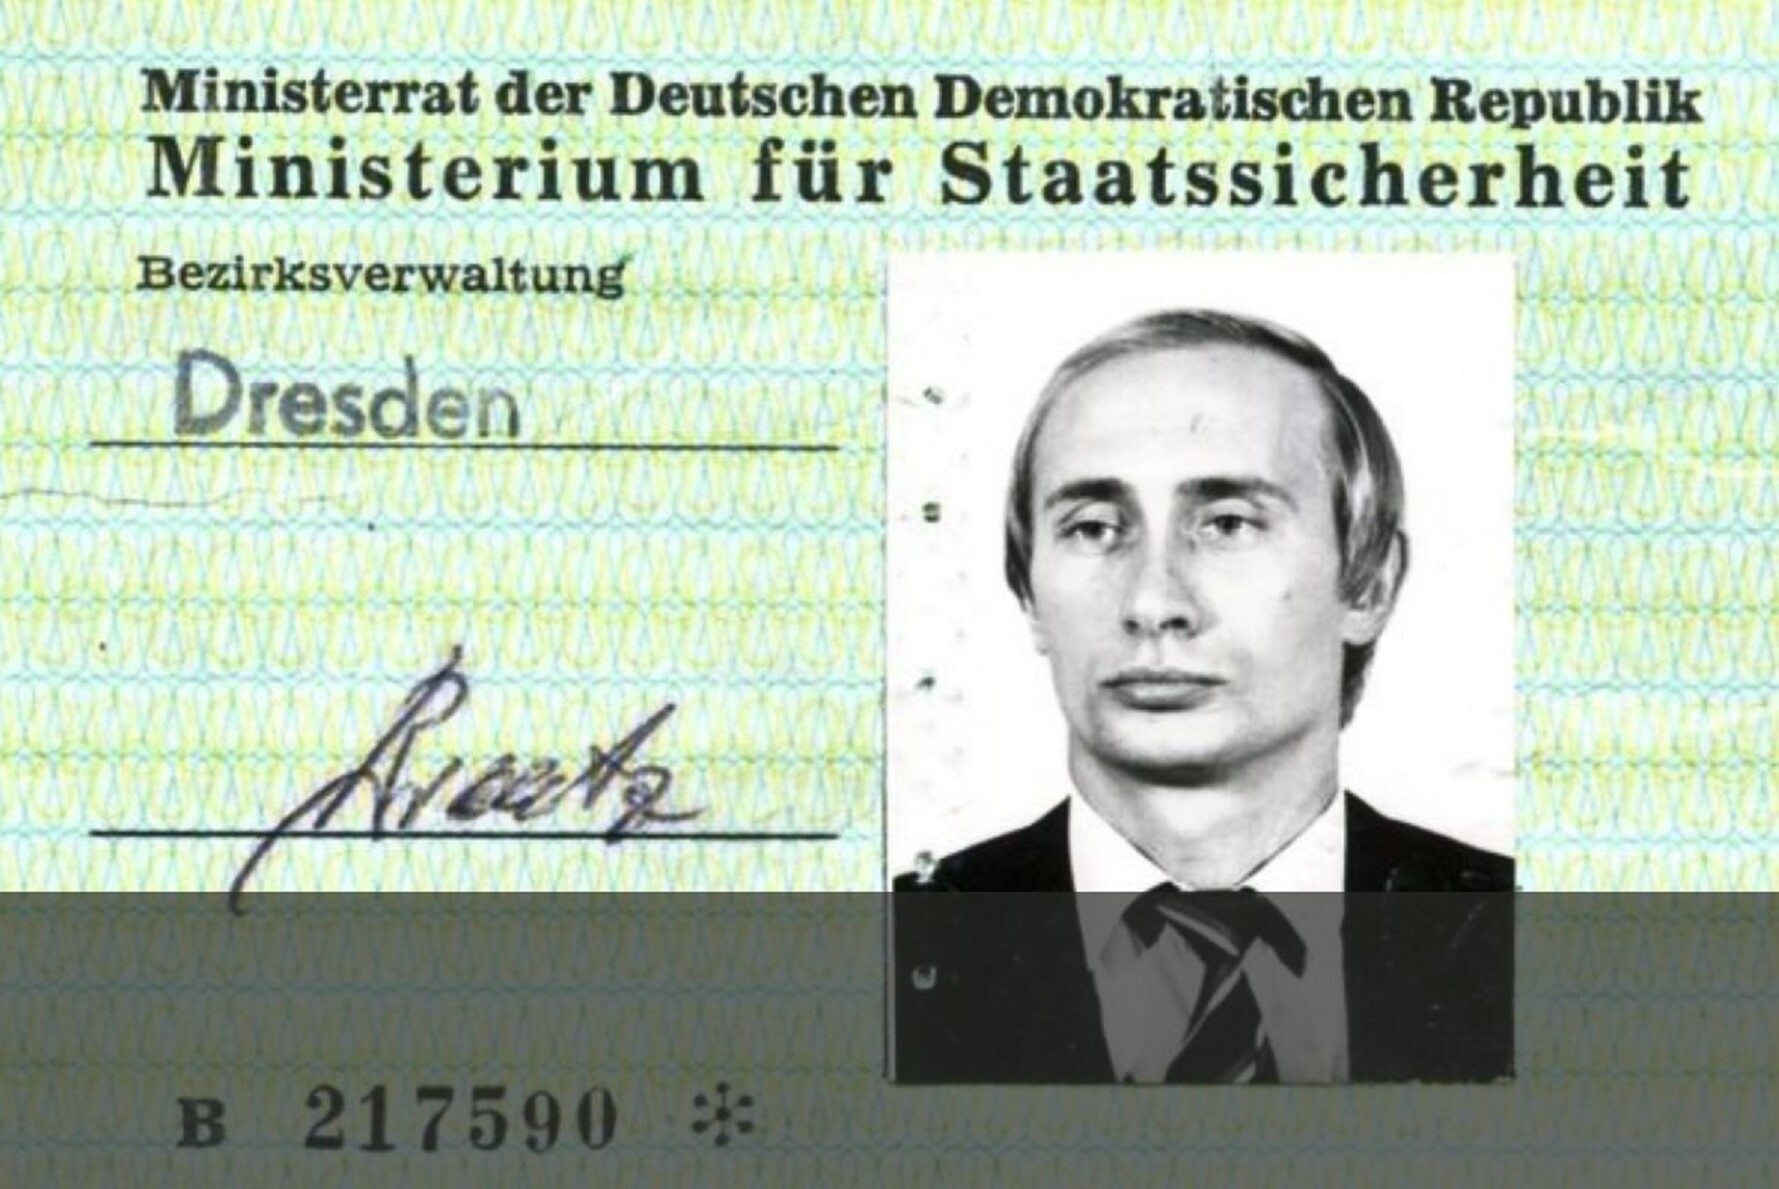 Молодий Путін – суперагент чи хлопчик на побігеньках? Розслідування Spiegel